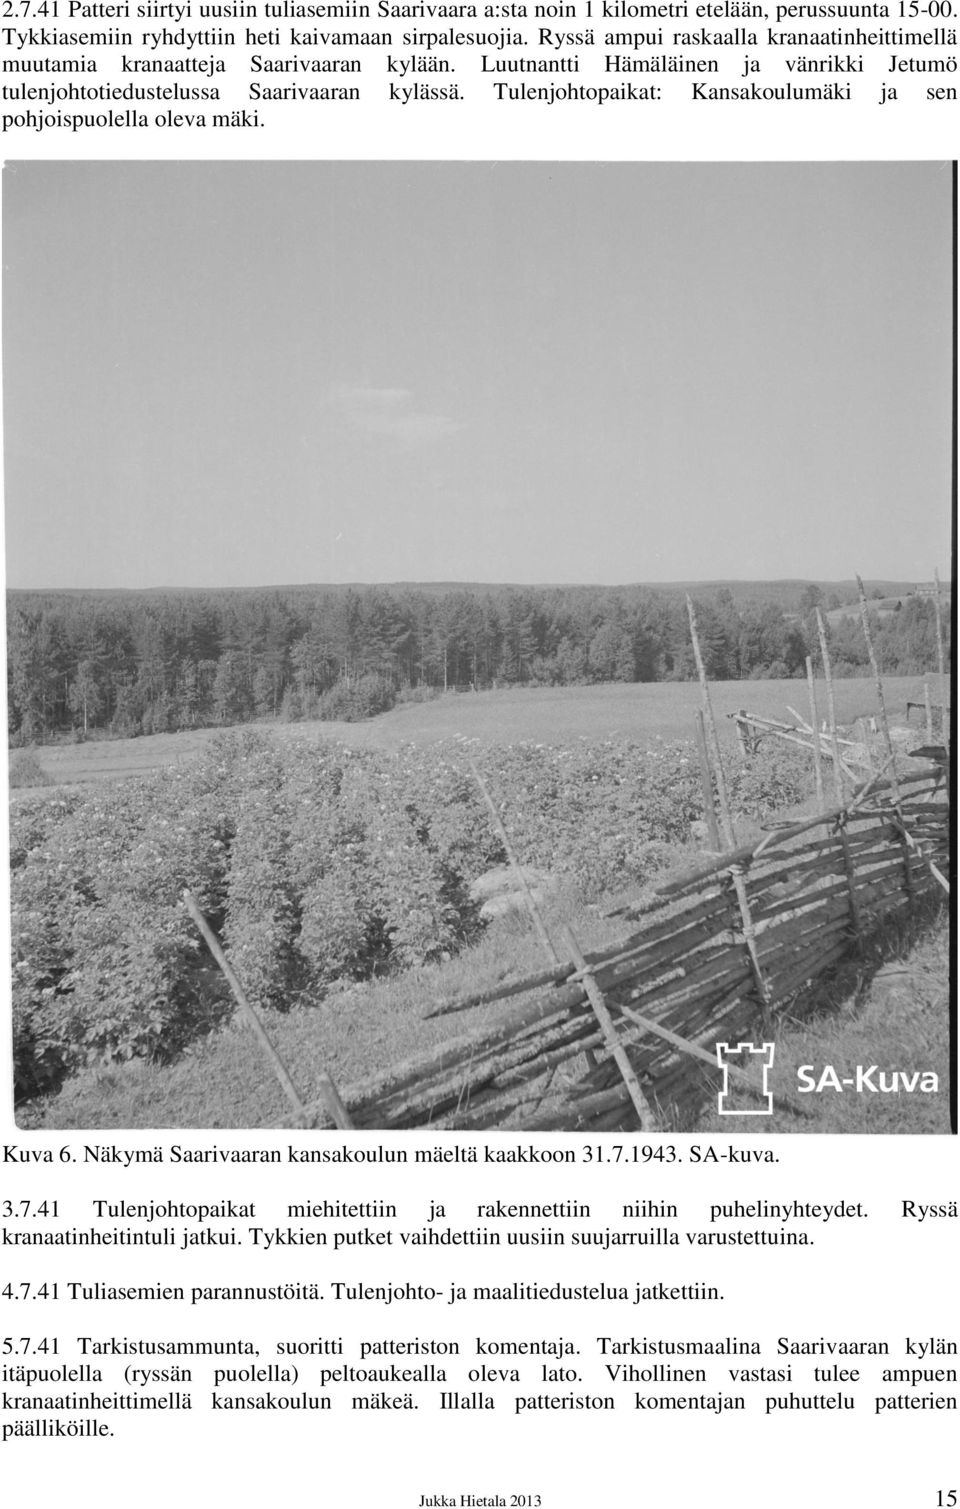 Tulenjohtopaikat: Kansakoulumäki ja sen pohjoispuolella oleva mäki. Kuva 6. Näkymä Saarivaaran kansakoulun mäeltä kaakkoon 31.7.1943. SA-kuva. 3.7.41 Tulenjohtopaikat miehitettiin ja rakennettiin niihin puhelinyhteydet.